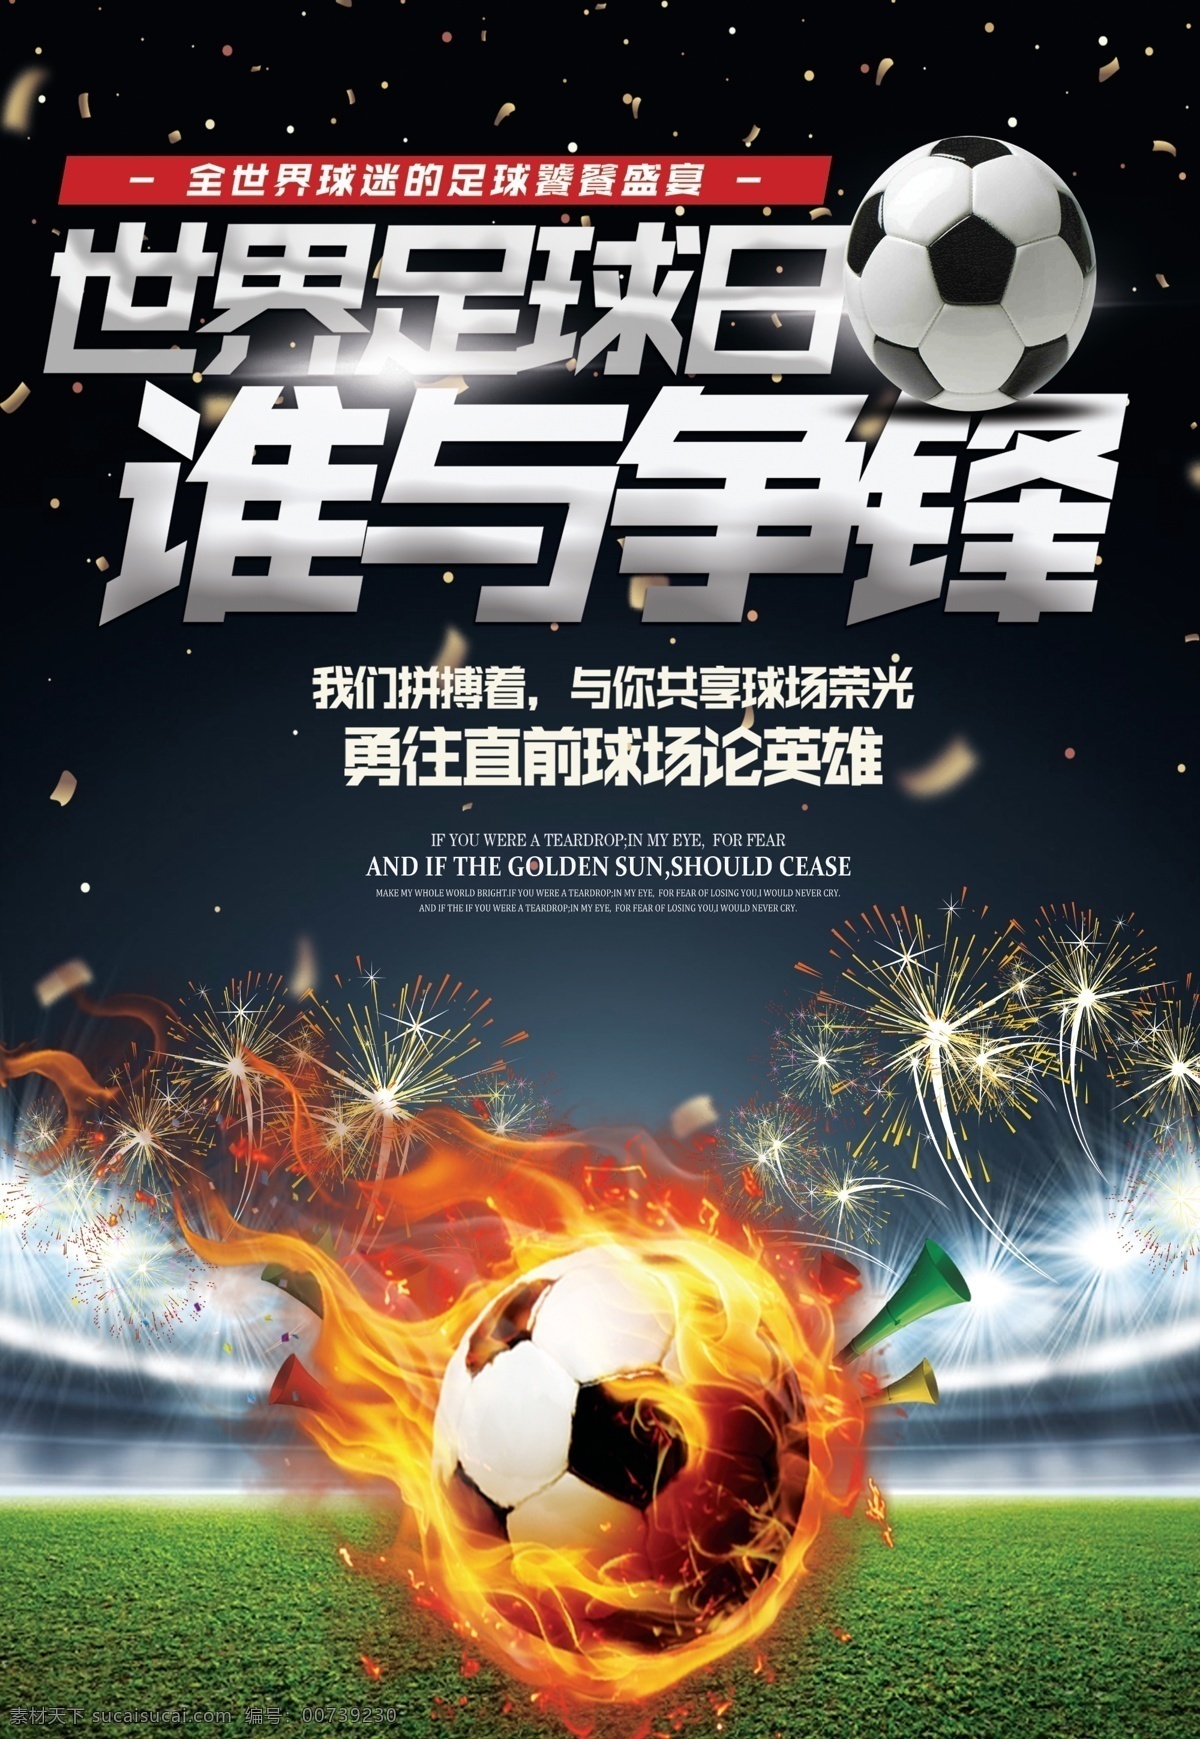 世界杯 争锋 足球 日 海报 广告 公益 宣传 谁与争锋 盛宴 球迷 球场